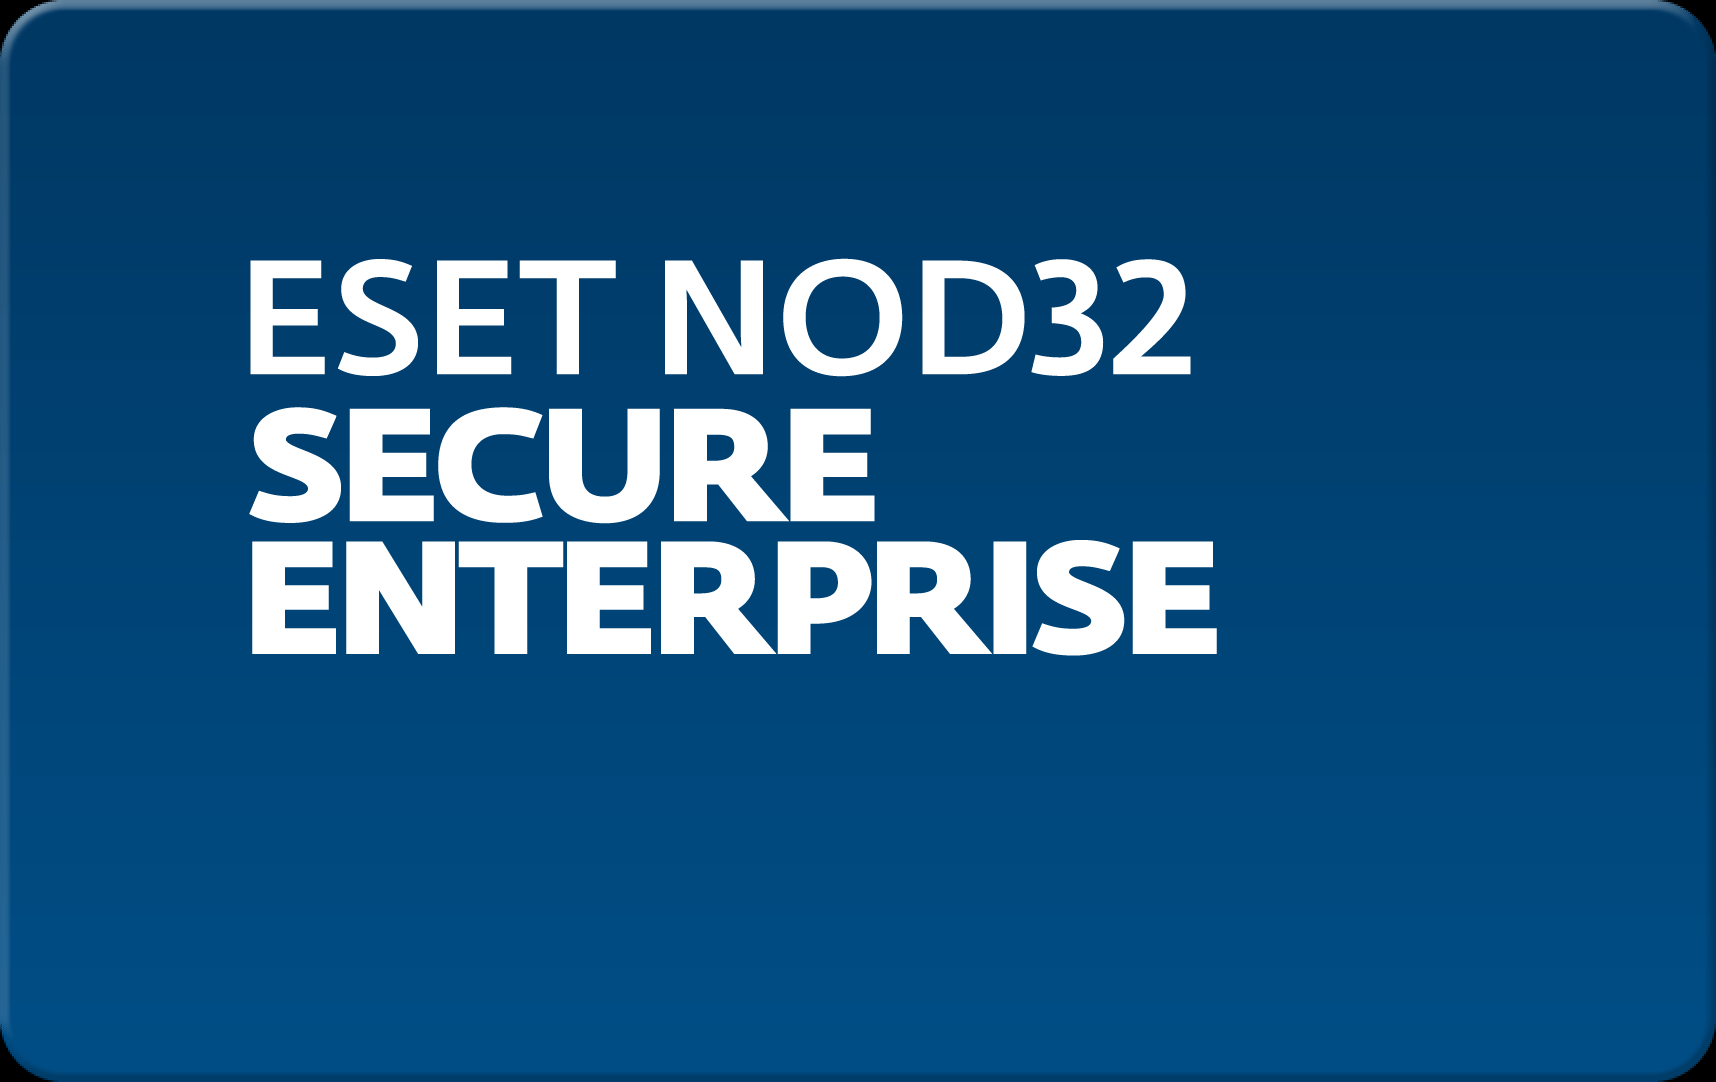        Eset NOD32 Secure Enterprise  152 